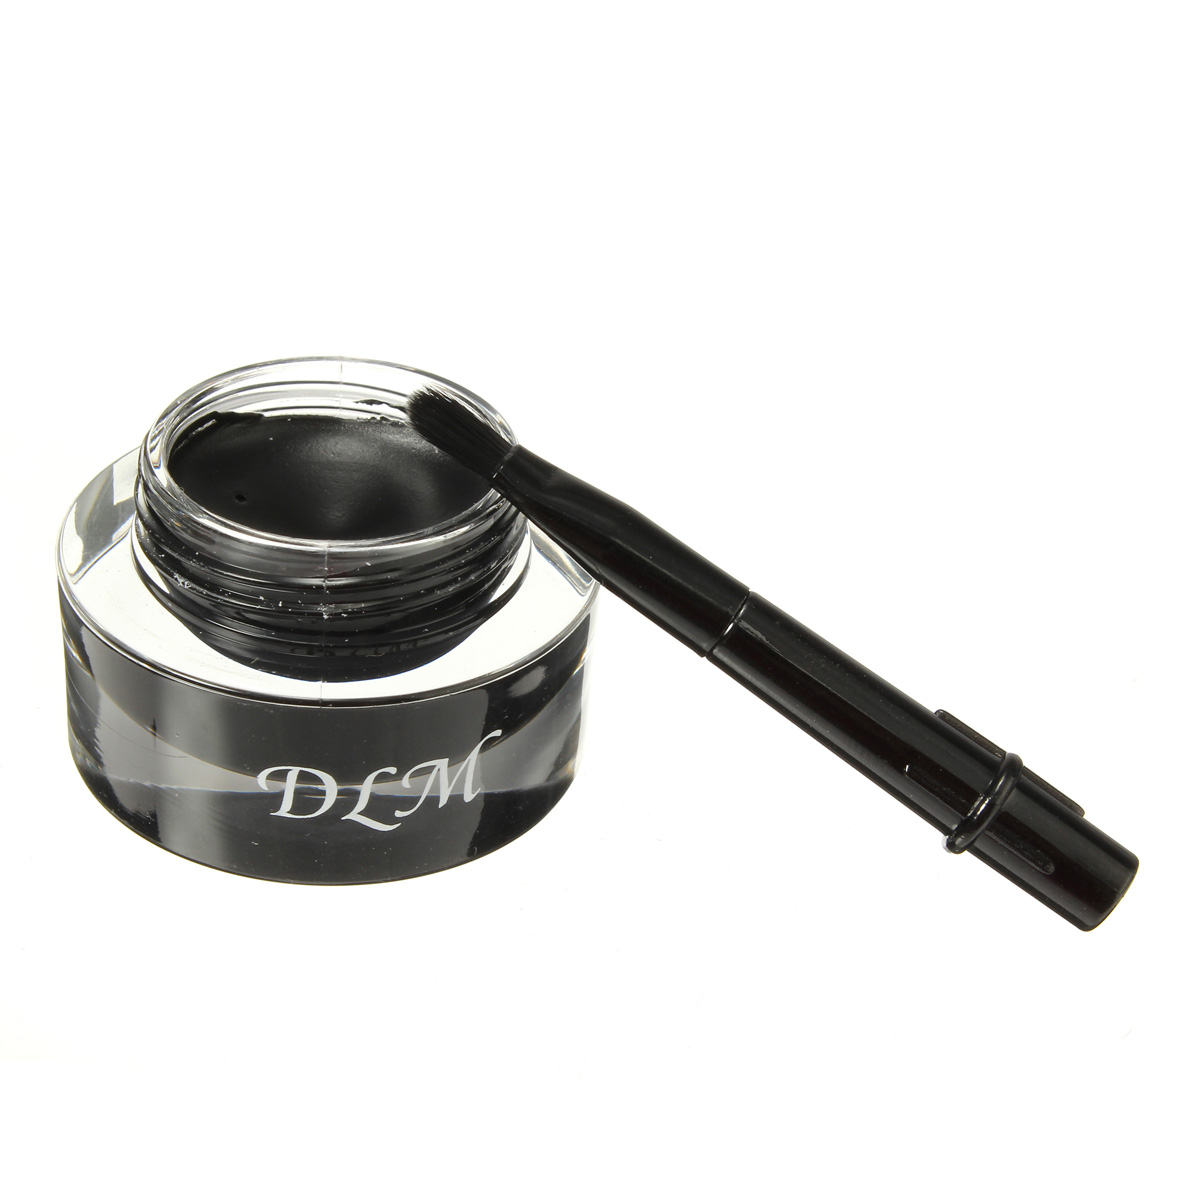 DLM Black Eyeliner Cream Long Lasting Waterproof Makeup with Brush